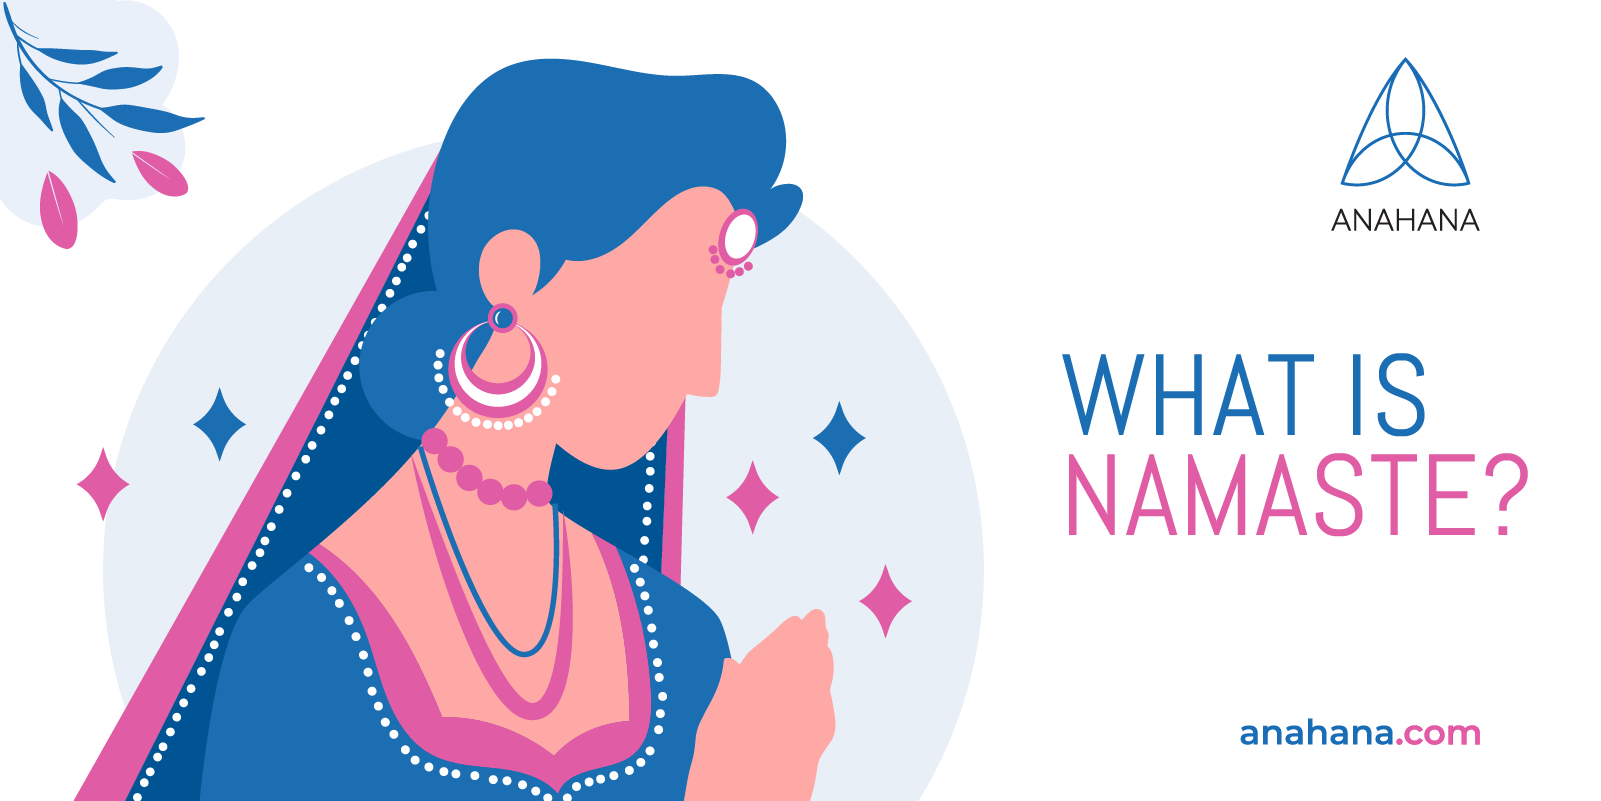 namaste sanskrit meaning